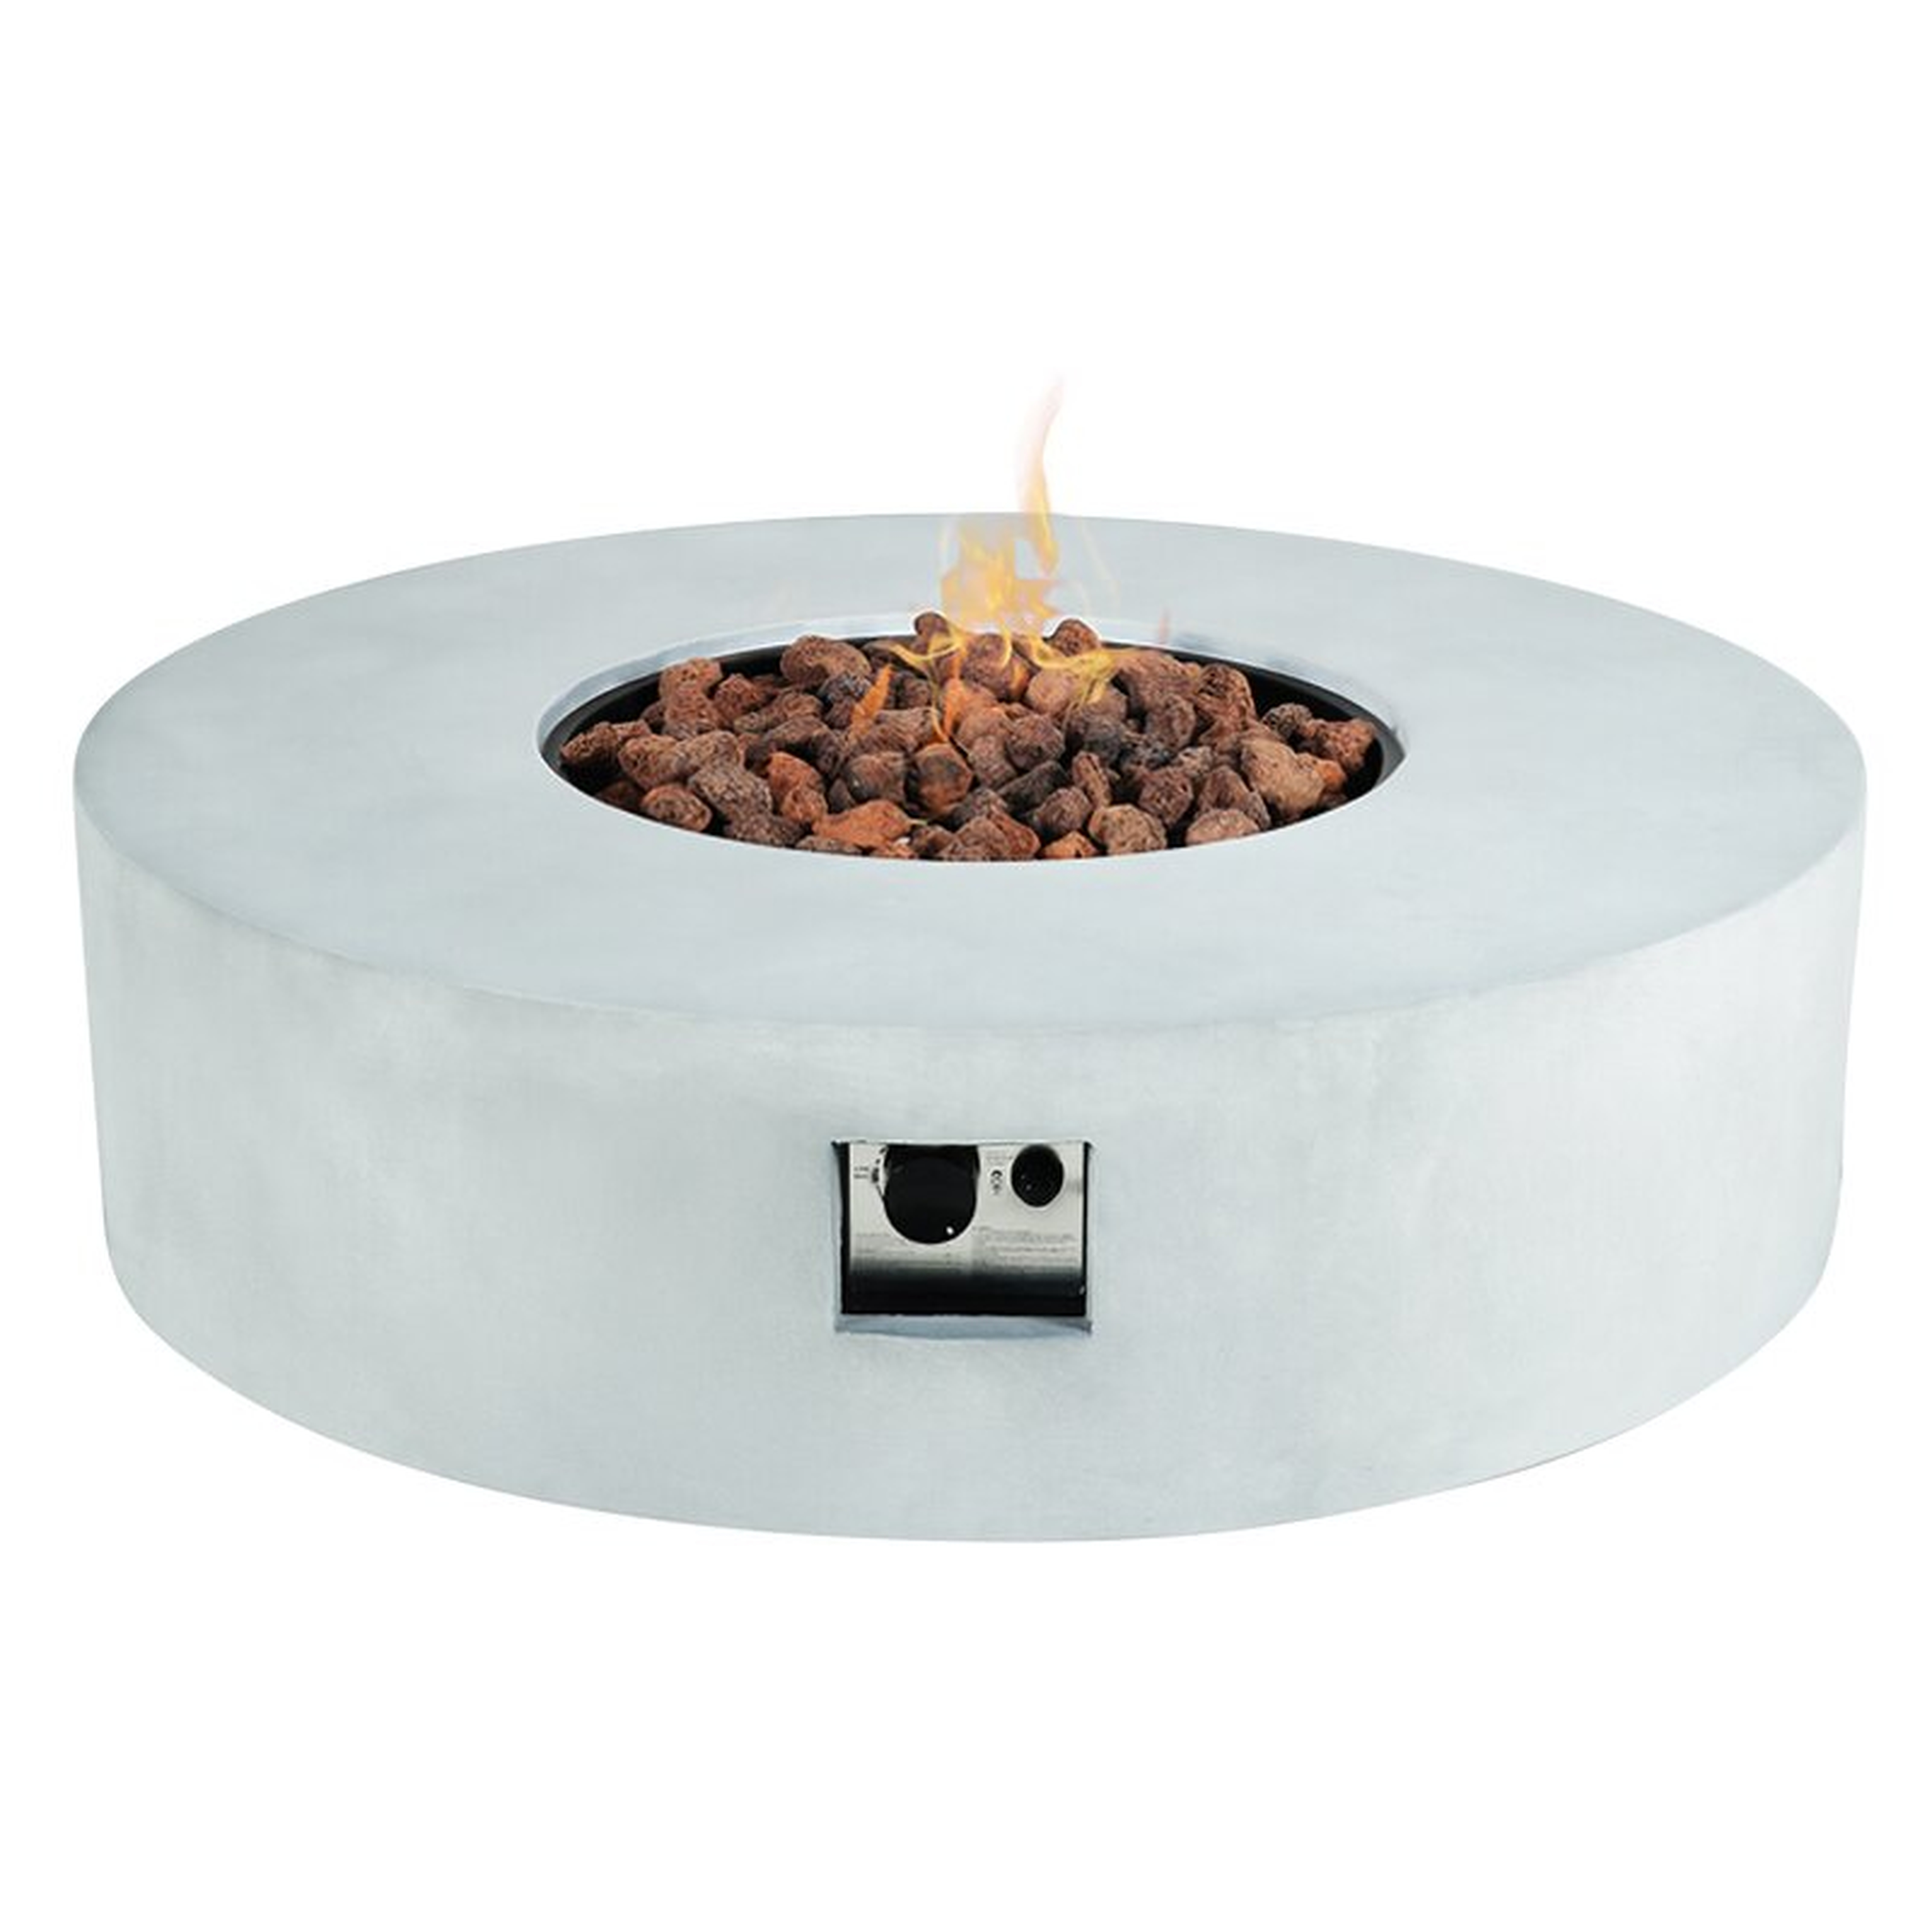 AMA Concrete Propane Fire Pit Table Insert - Perigold